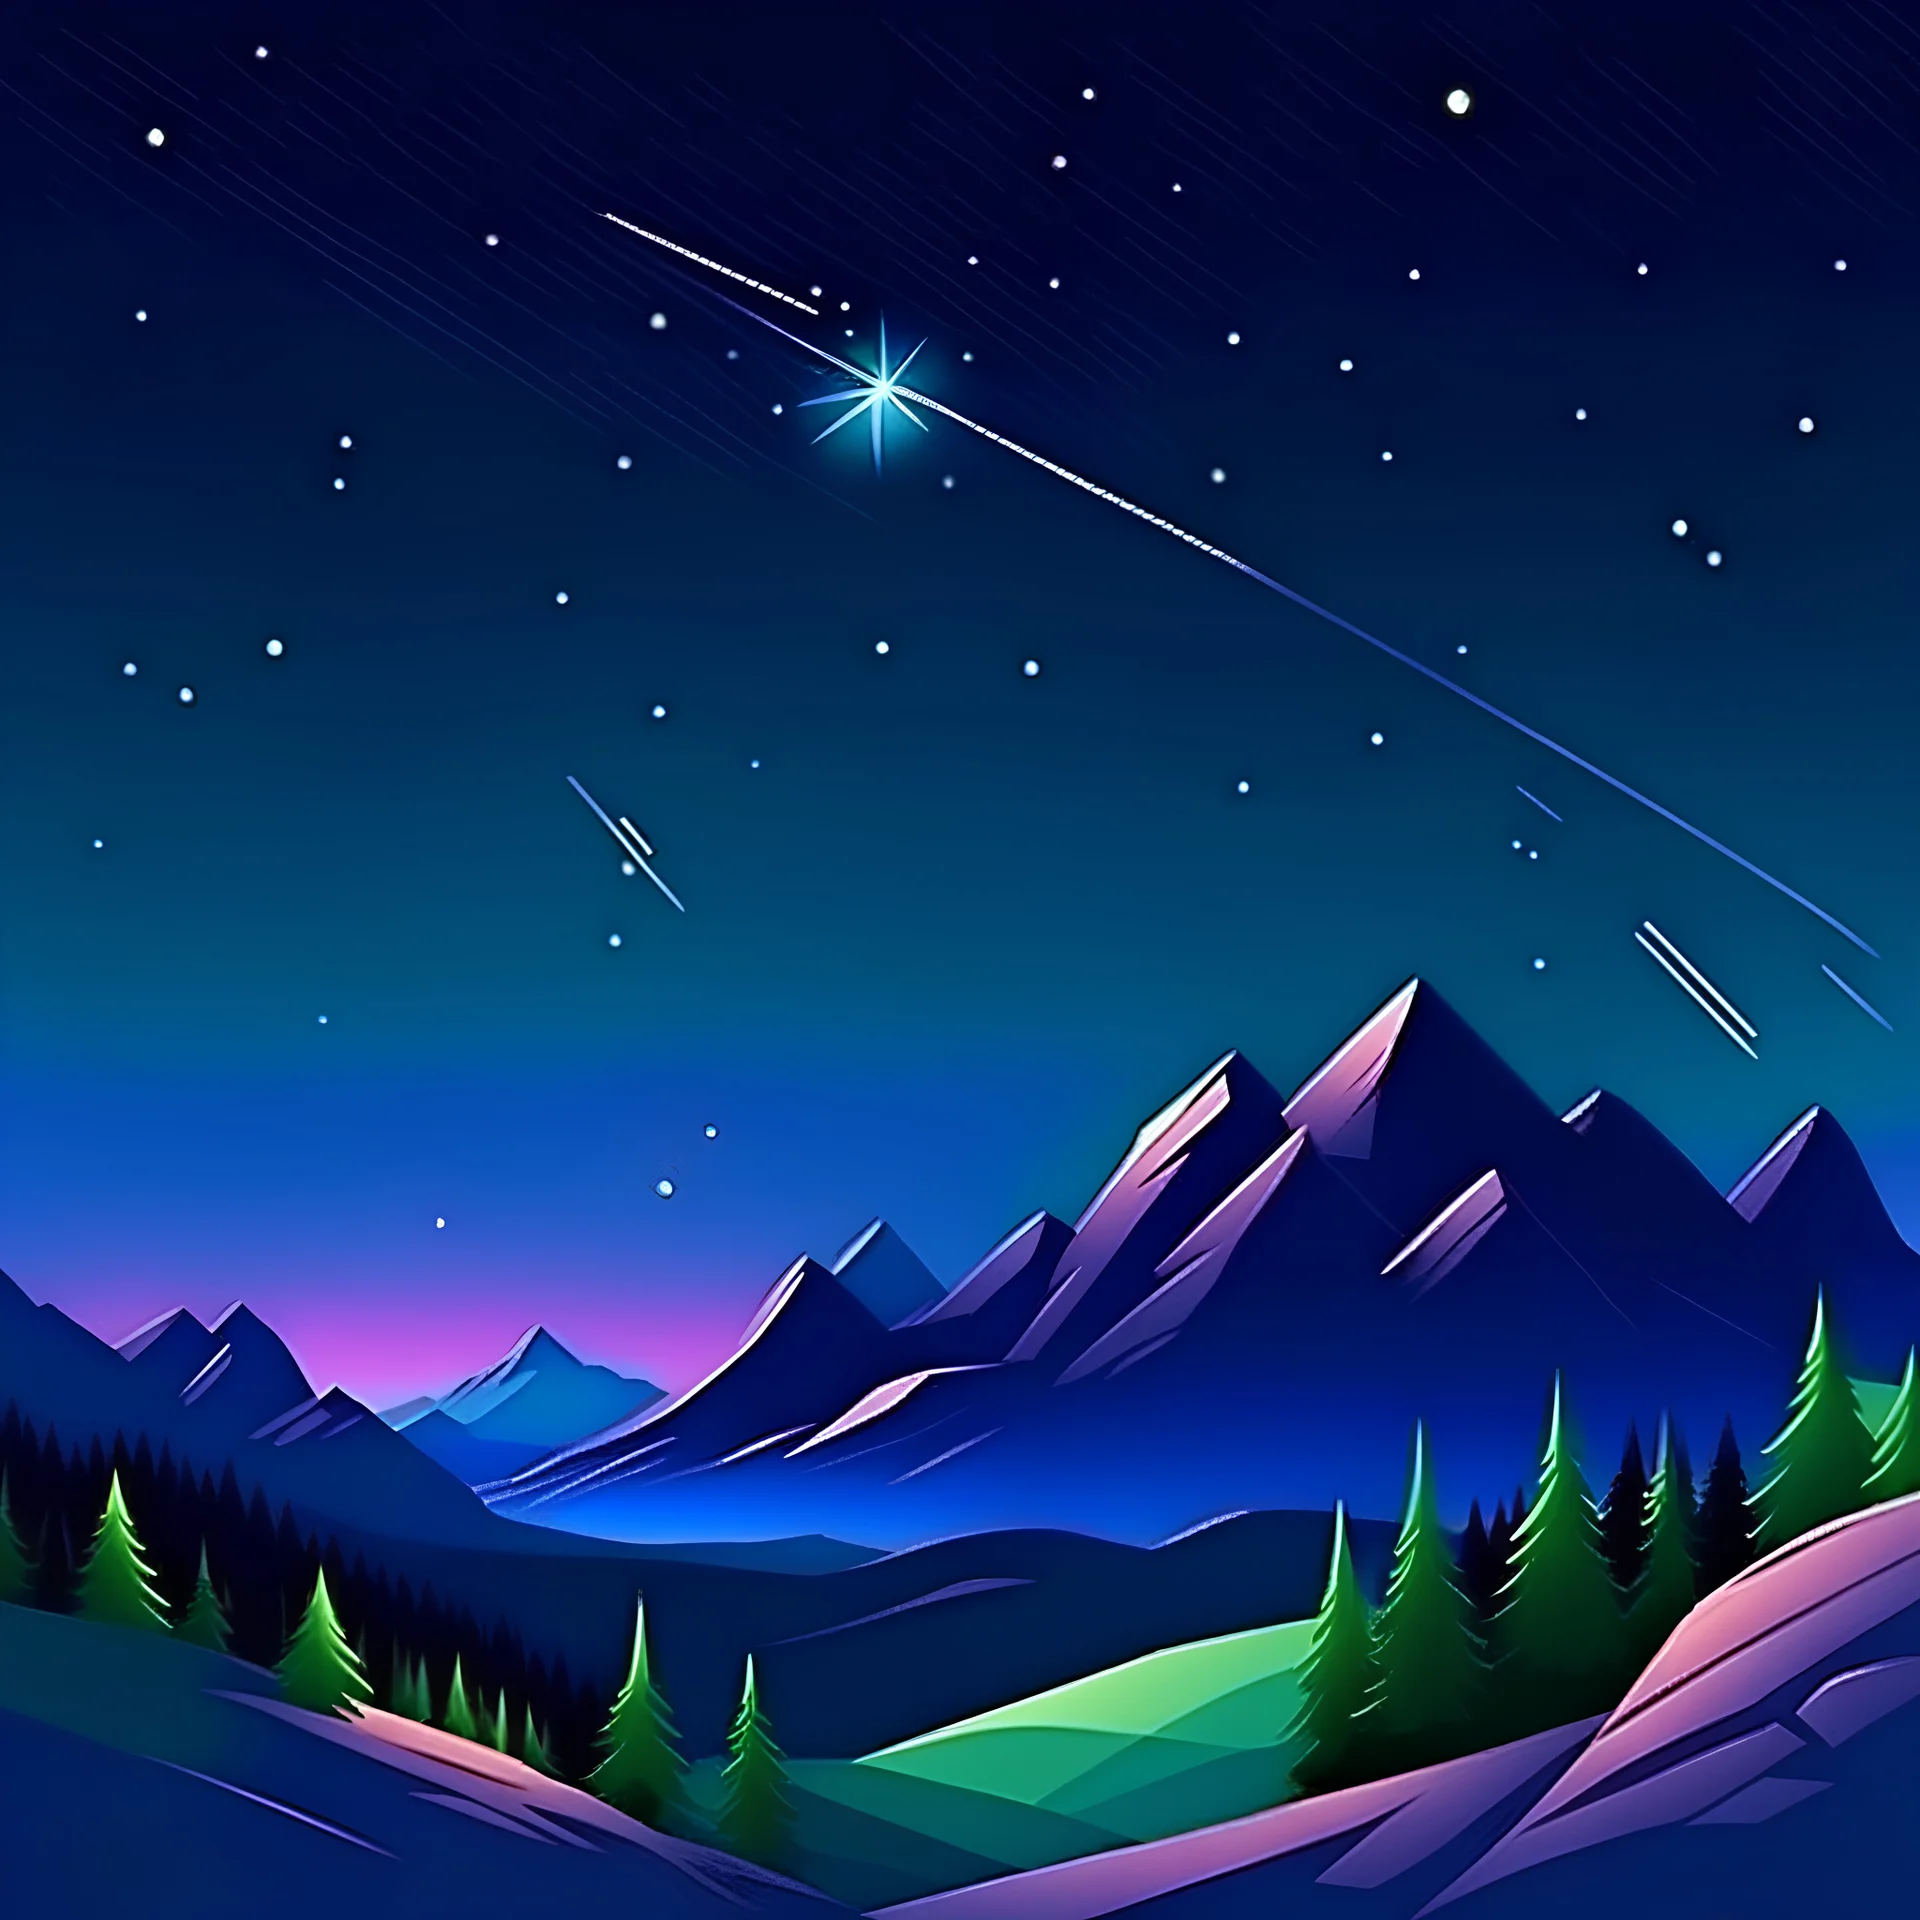 paisaje de montaña nocturno con estrellas fugaces